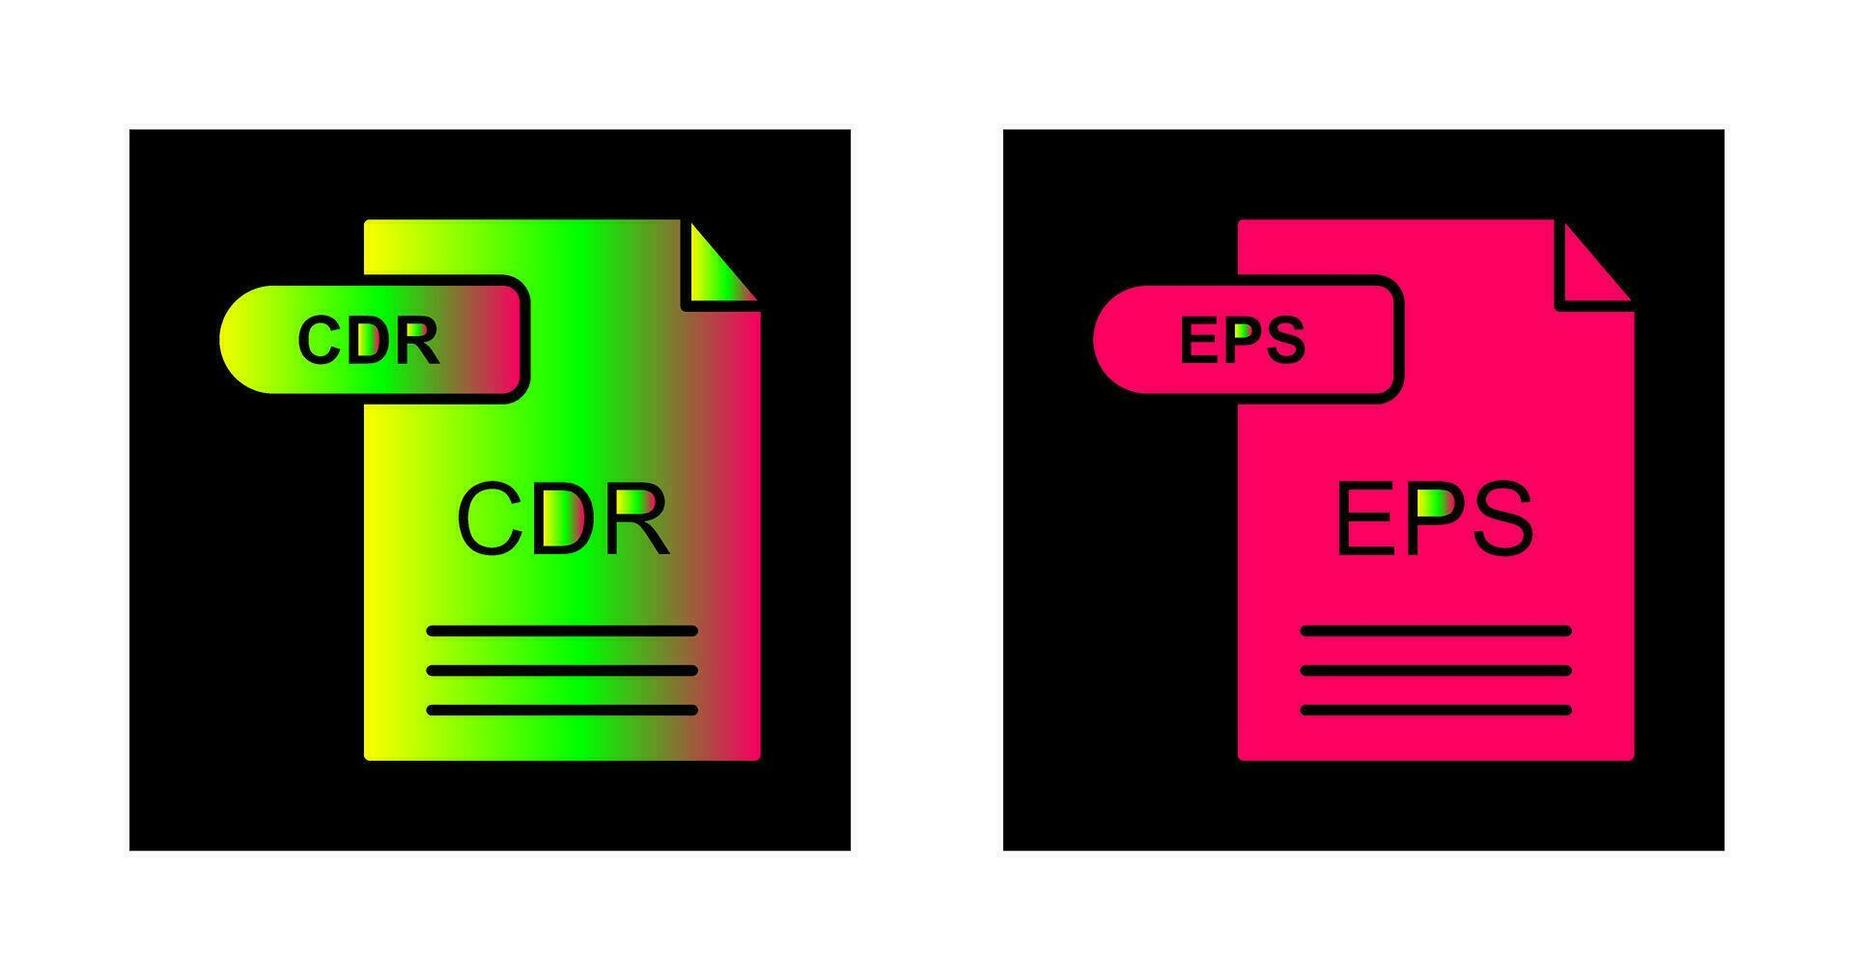 CDR och eps ikon vektor